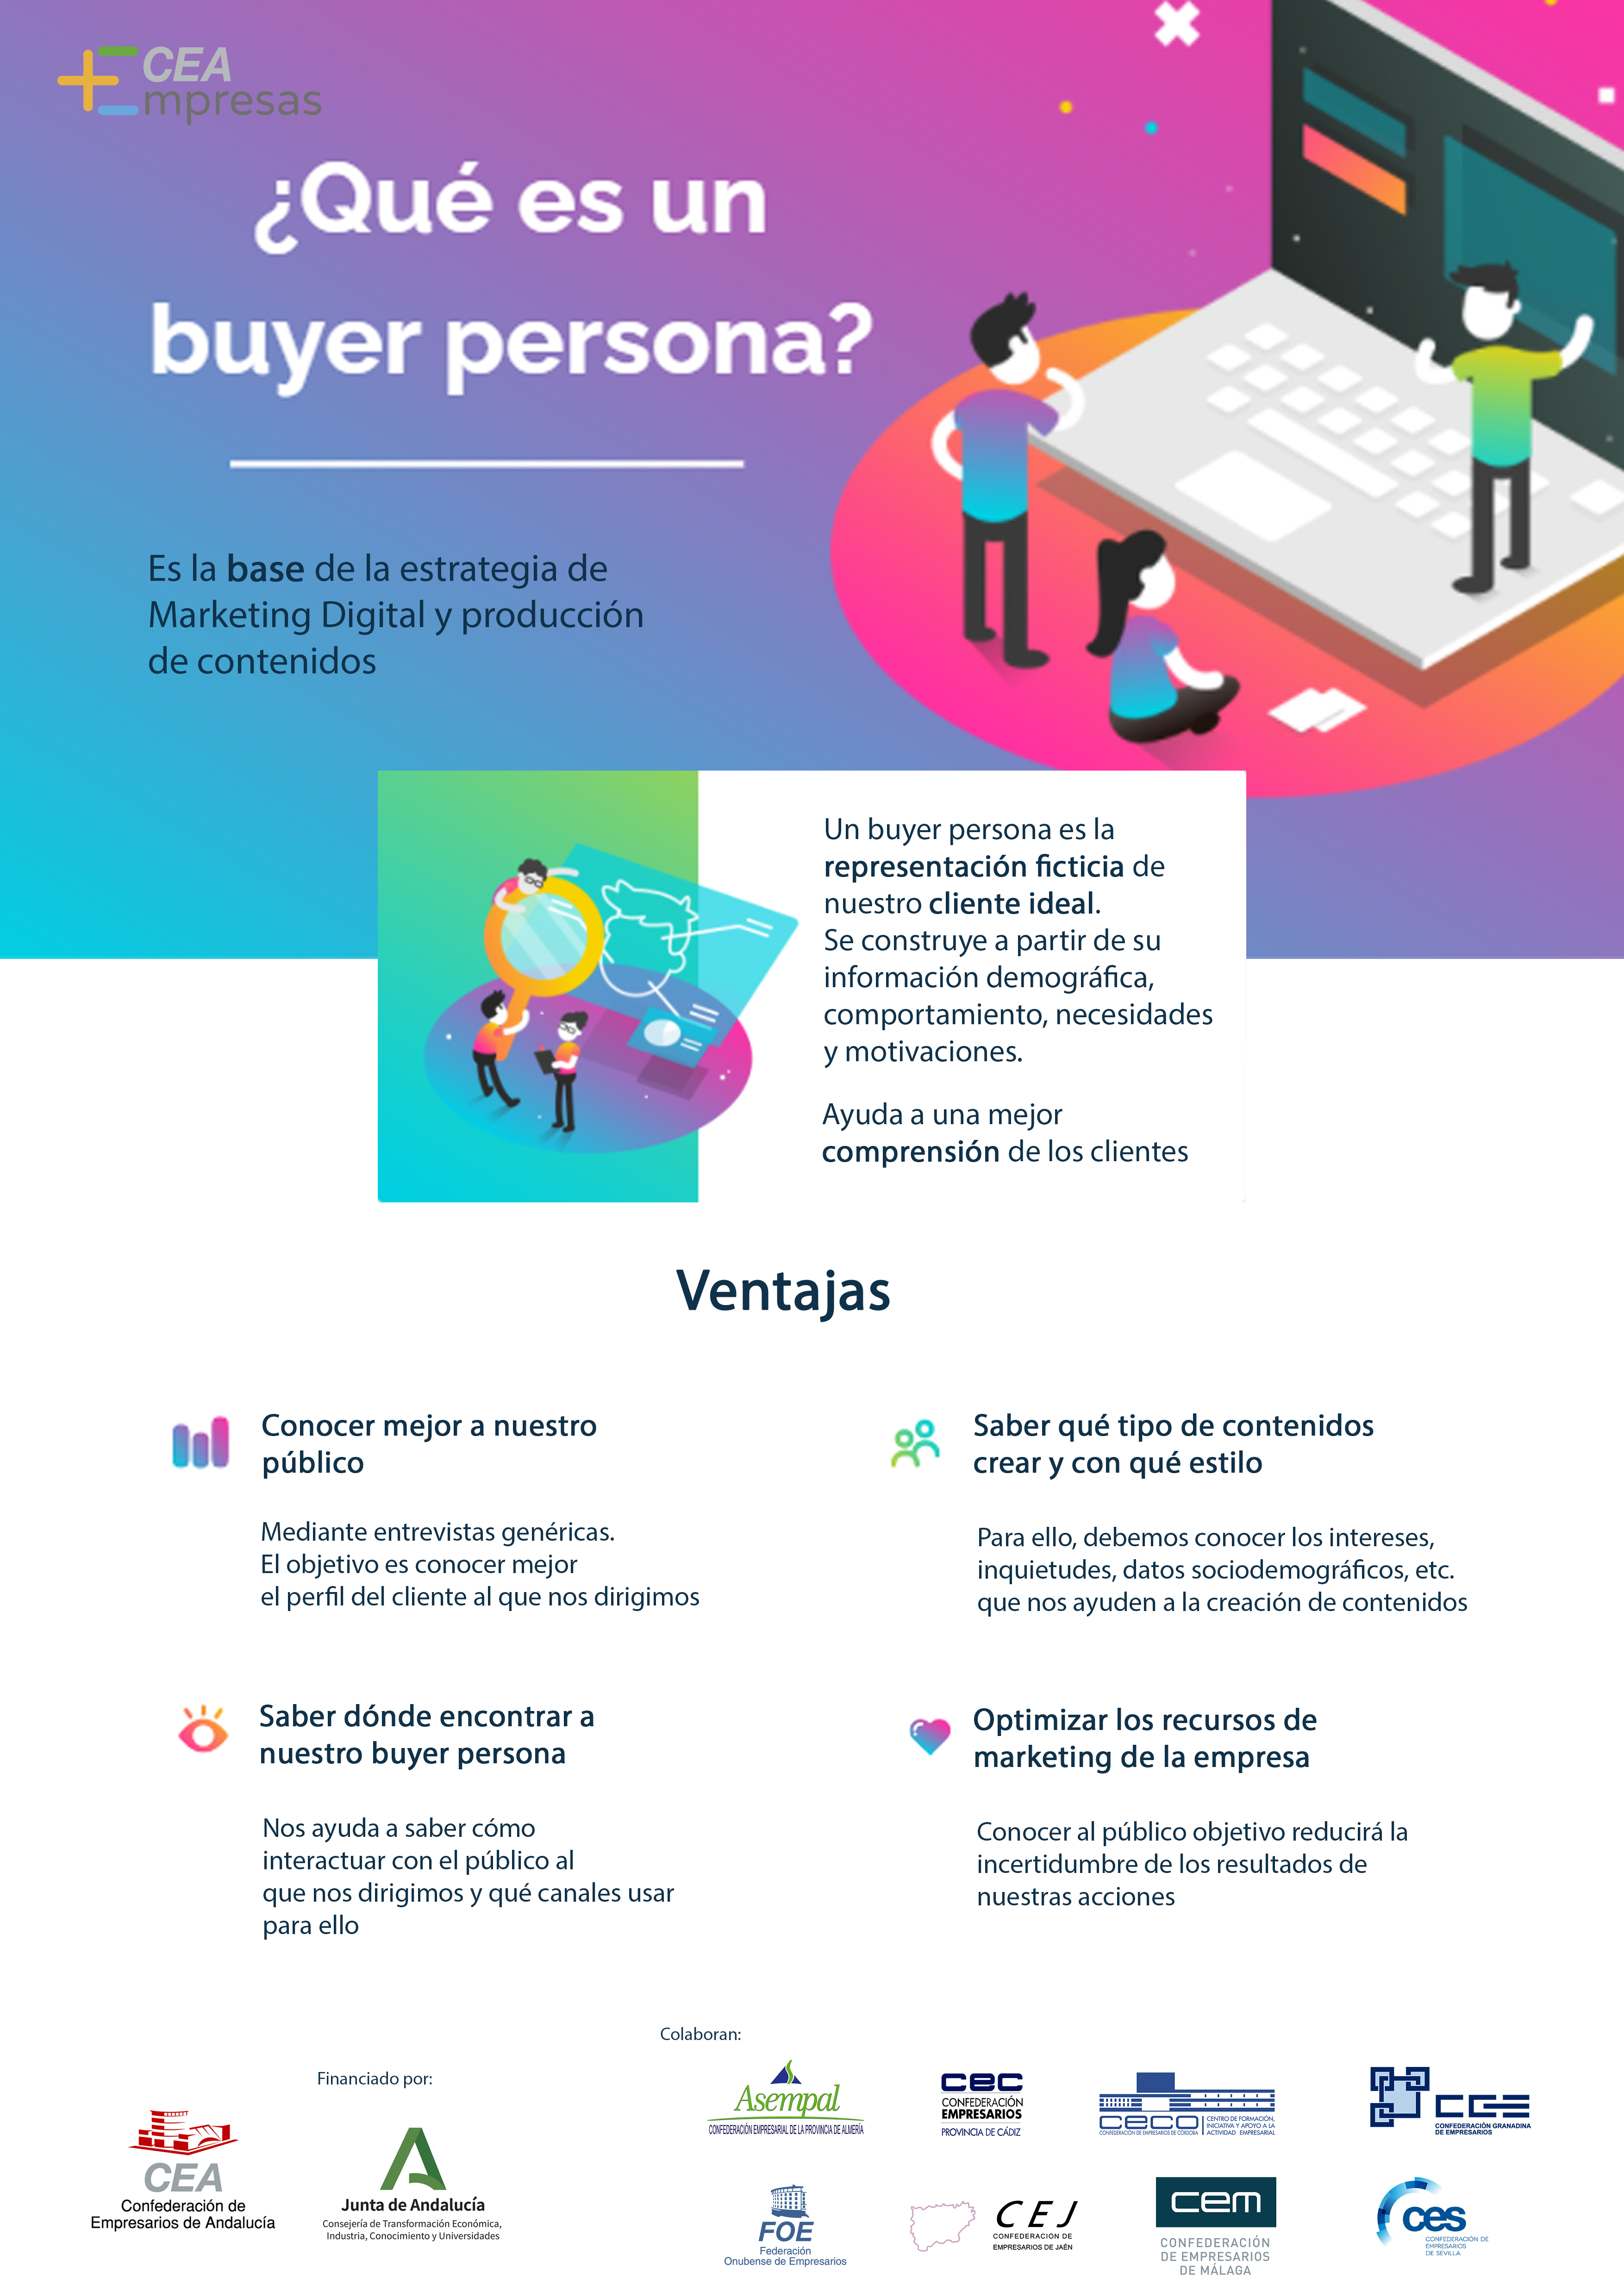 Infografía: ¿Qué es un buyer persona? - CEA-Empresas